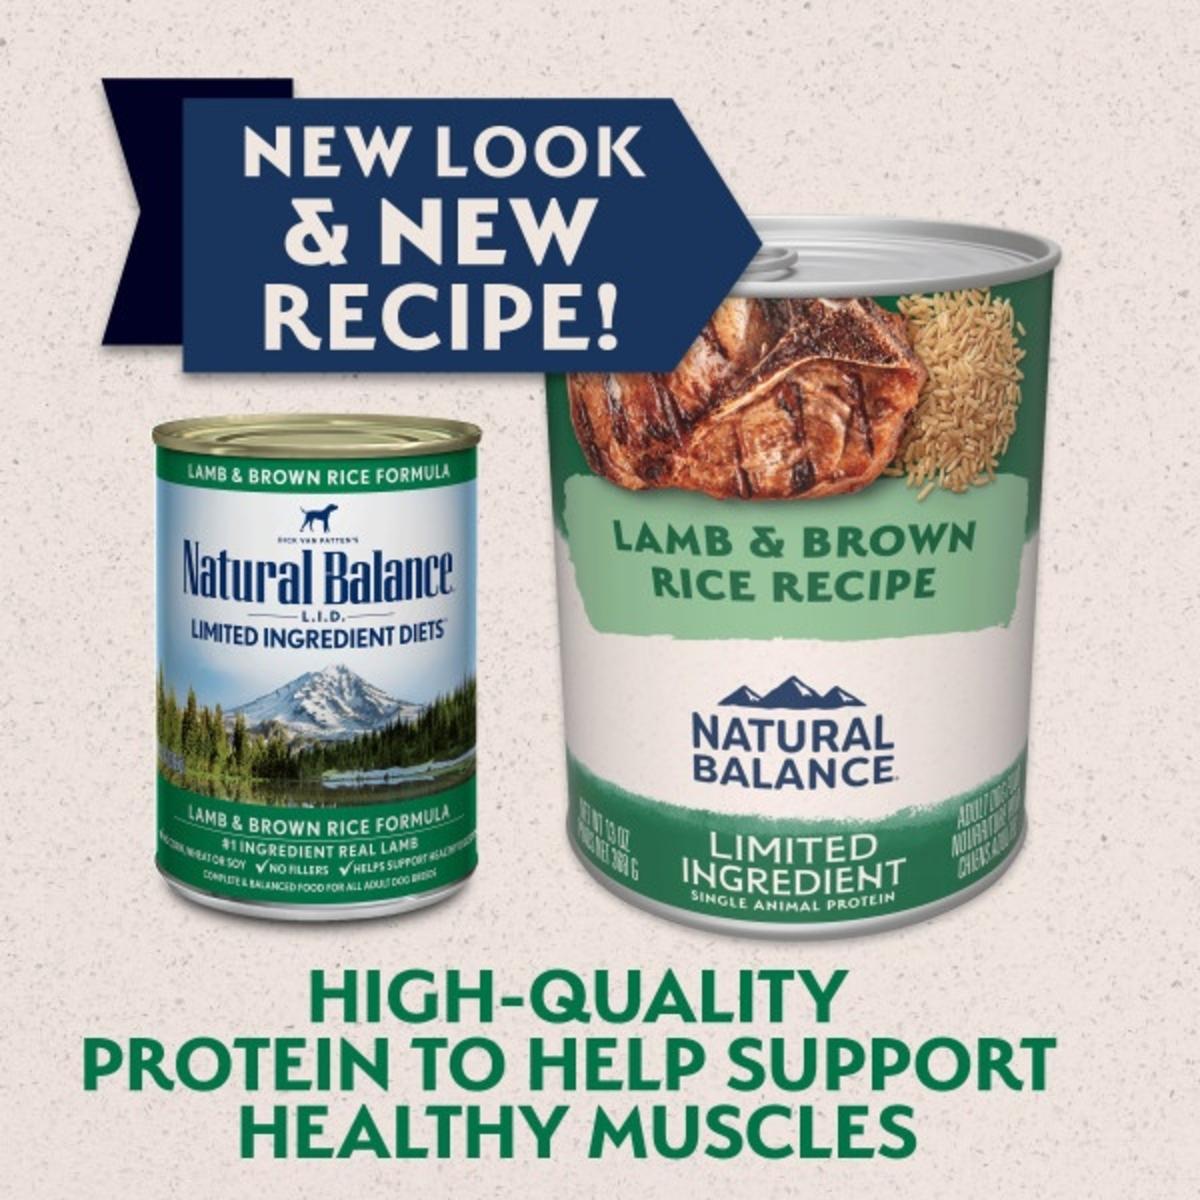 Natural Balance® Limited Ingredient Lamb & Brown Rice Recipe